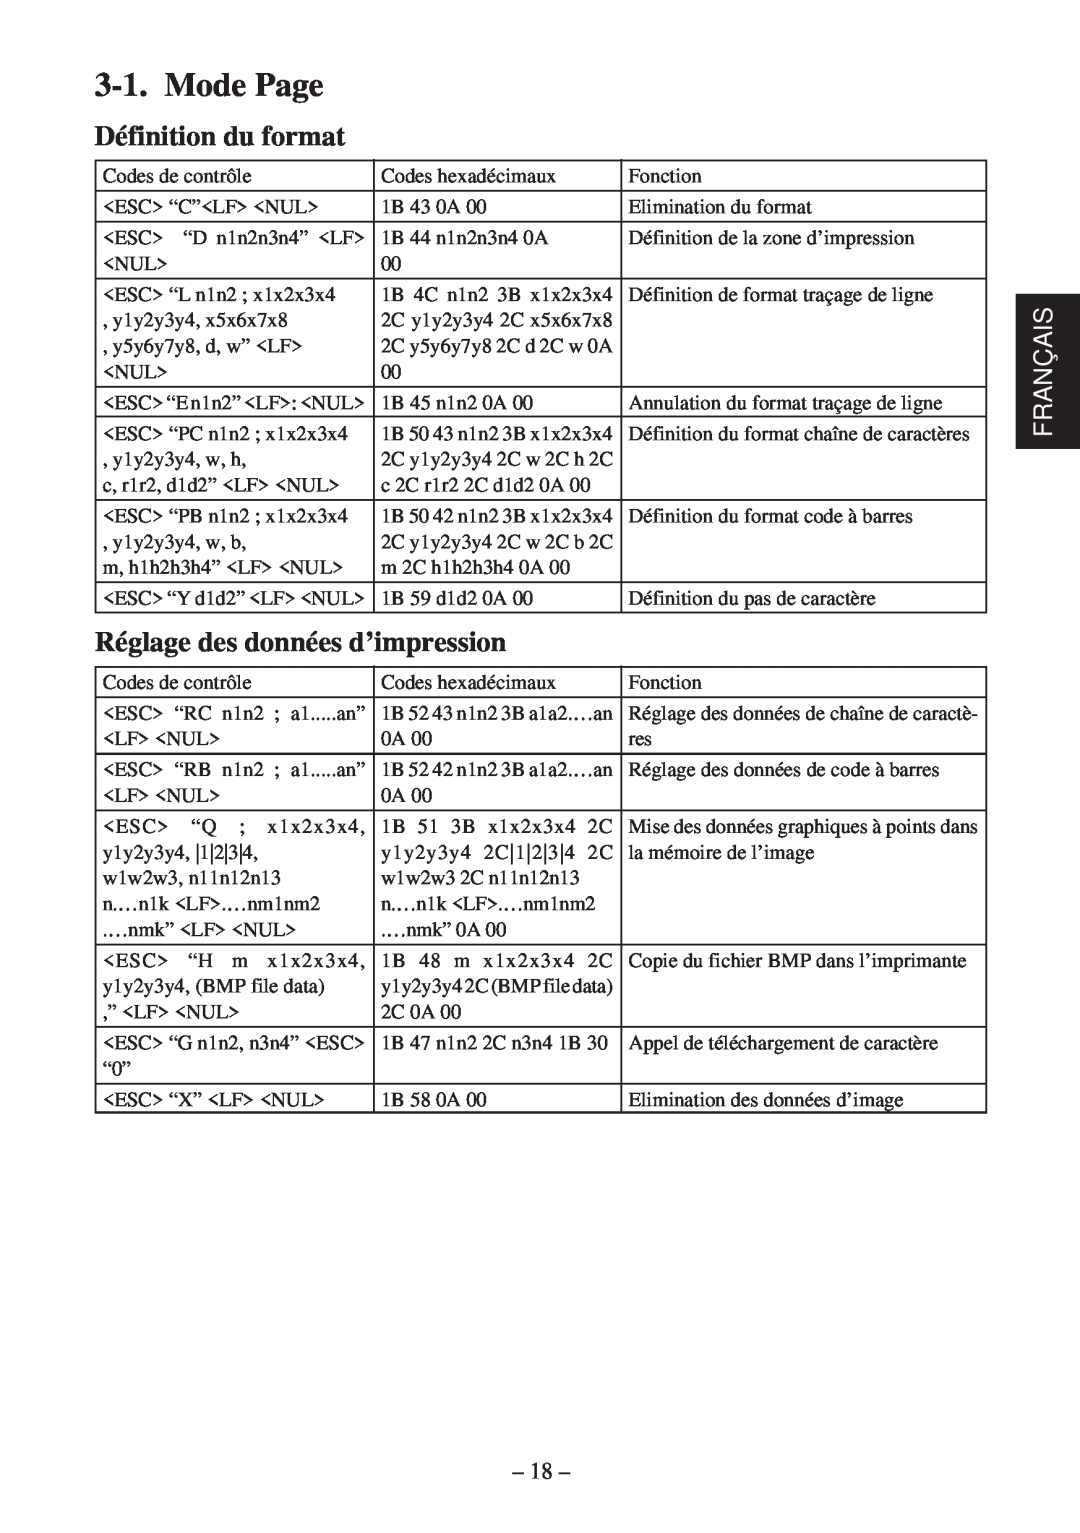 Star Micronics TSP400 Series user manual Mode Page Définition du format, Réglage des données d’impression, Français 